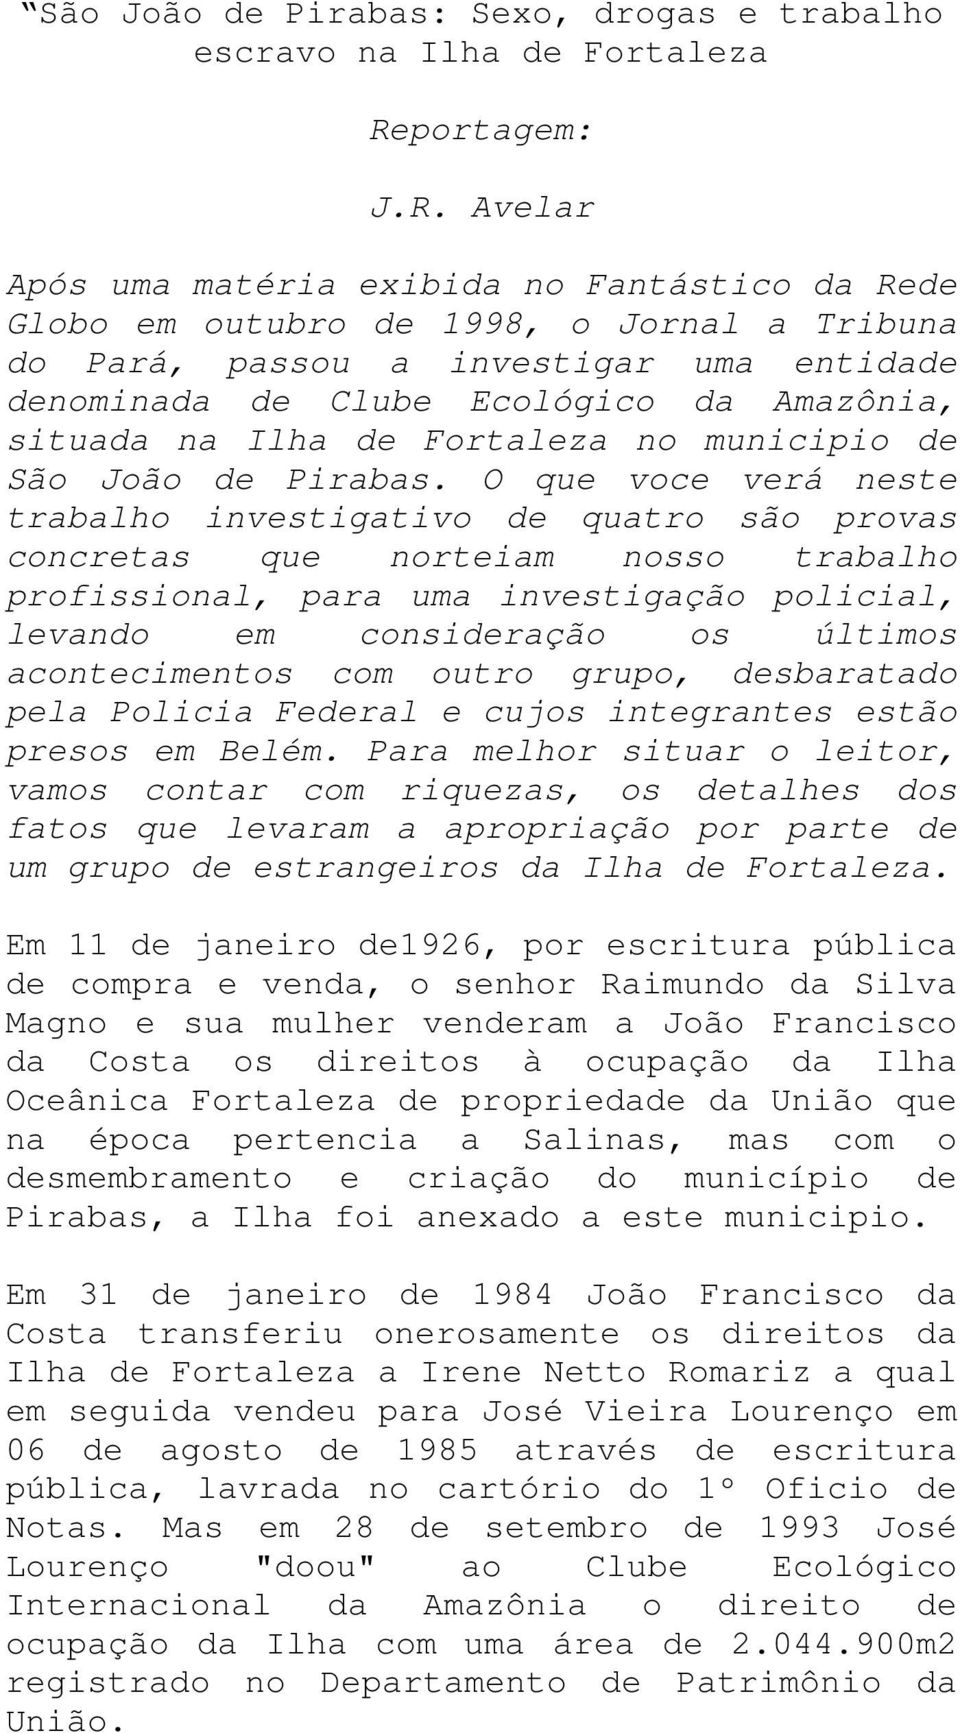 Avelar Após uma matéria exibida no Fantástico da Rede Globo em outubro de 1998, o Jornal a Tribuna do Pará, passou a investigar uma entidade denominada de Clube Ecológico da Amazônia, situada na Ilha